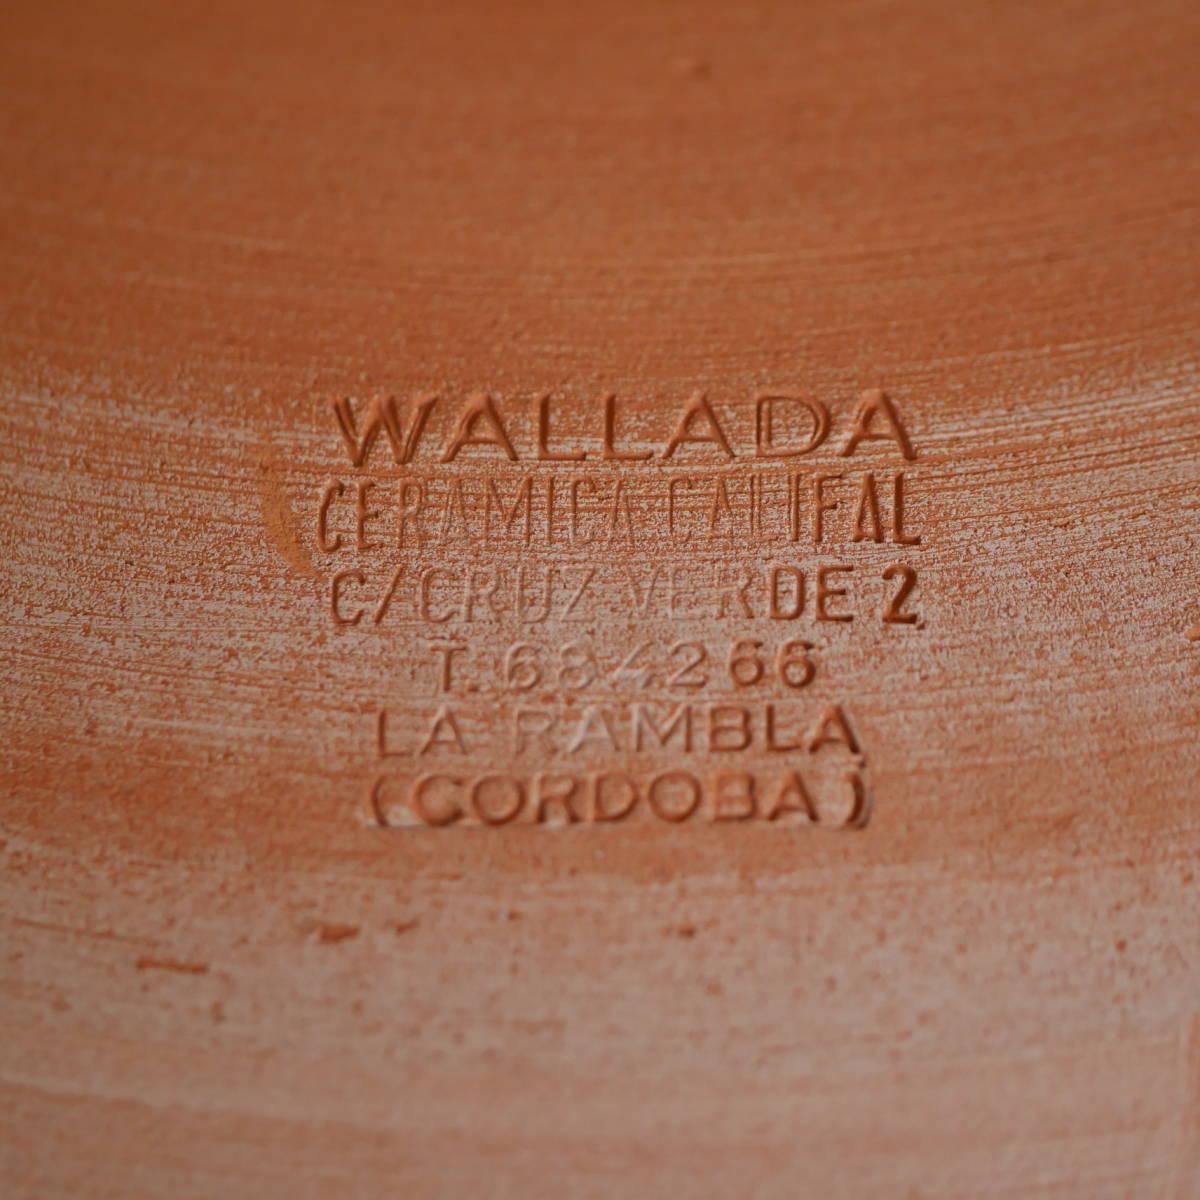 南欧陶器 スペイン アンダルシア 「孔雀の飾皿」 Ceramica Califal Wallada, La Rambla Cordoba SPAIN_画像3